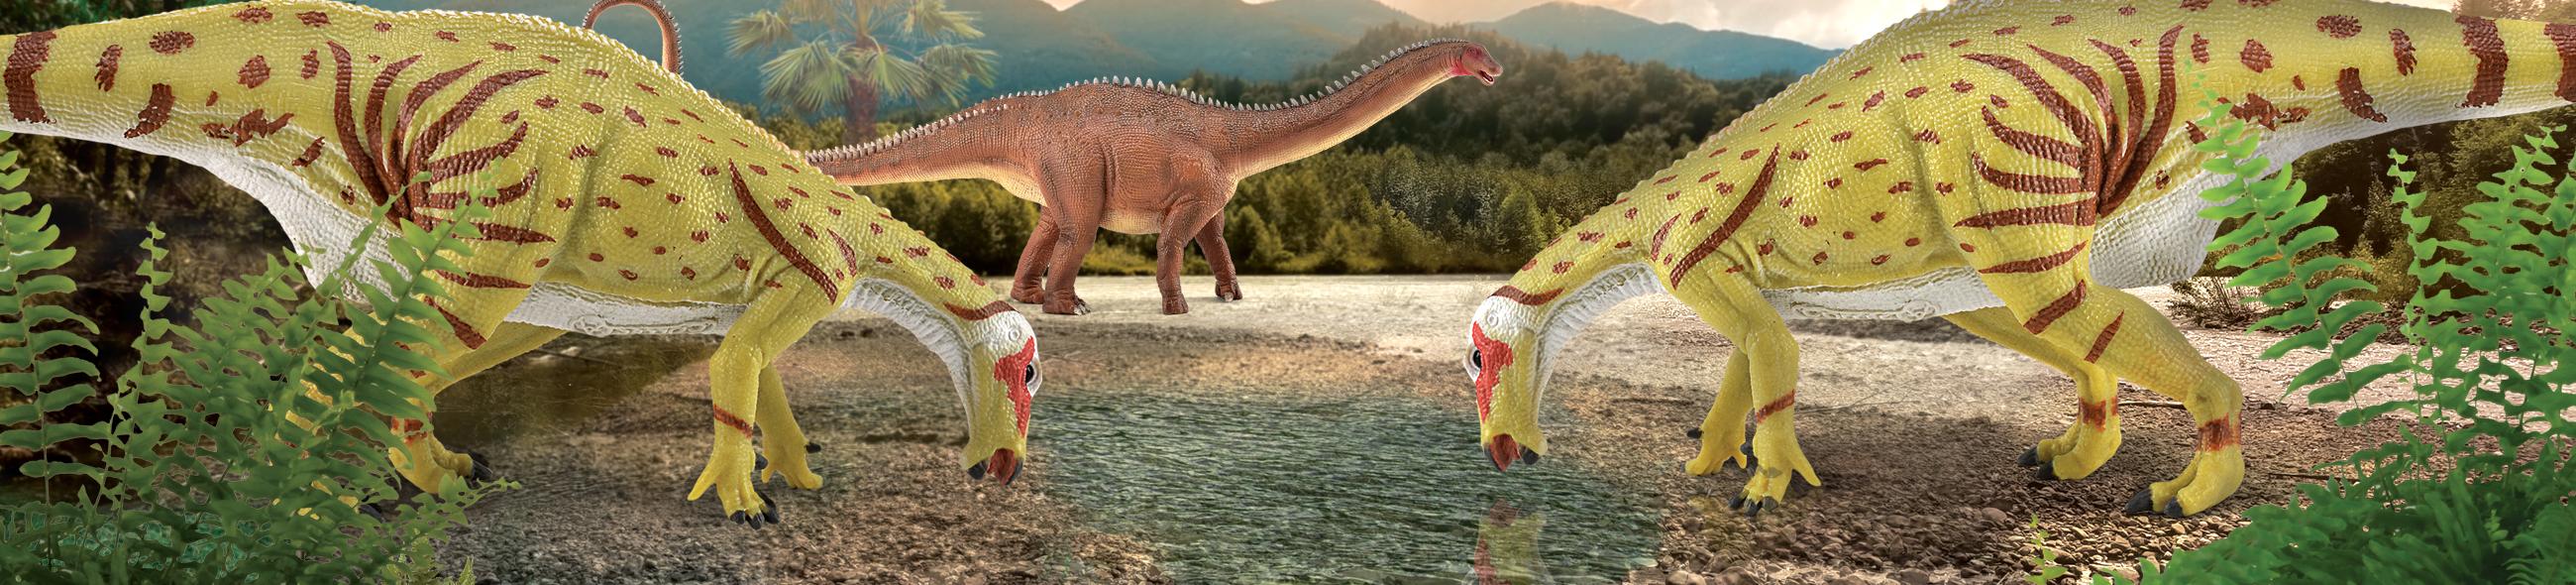 恐龙时代 - 流行系列